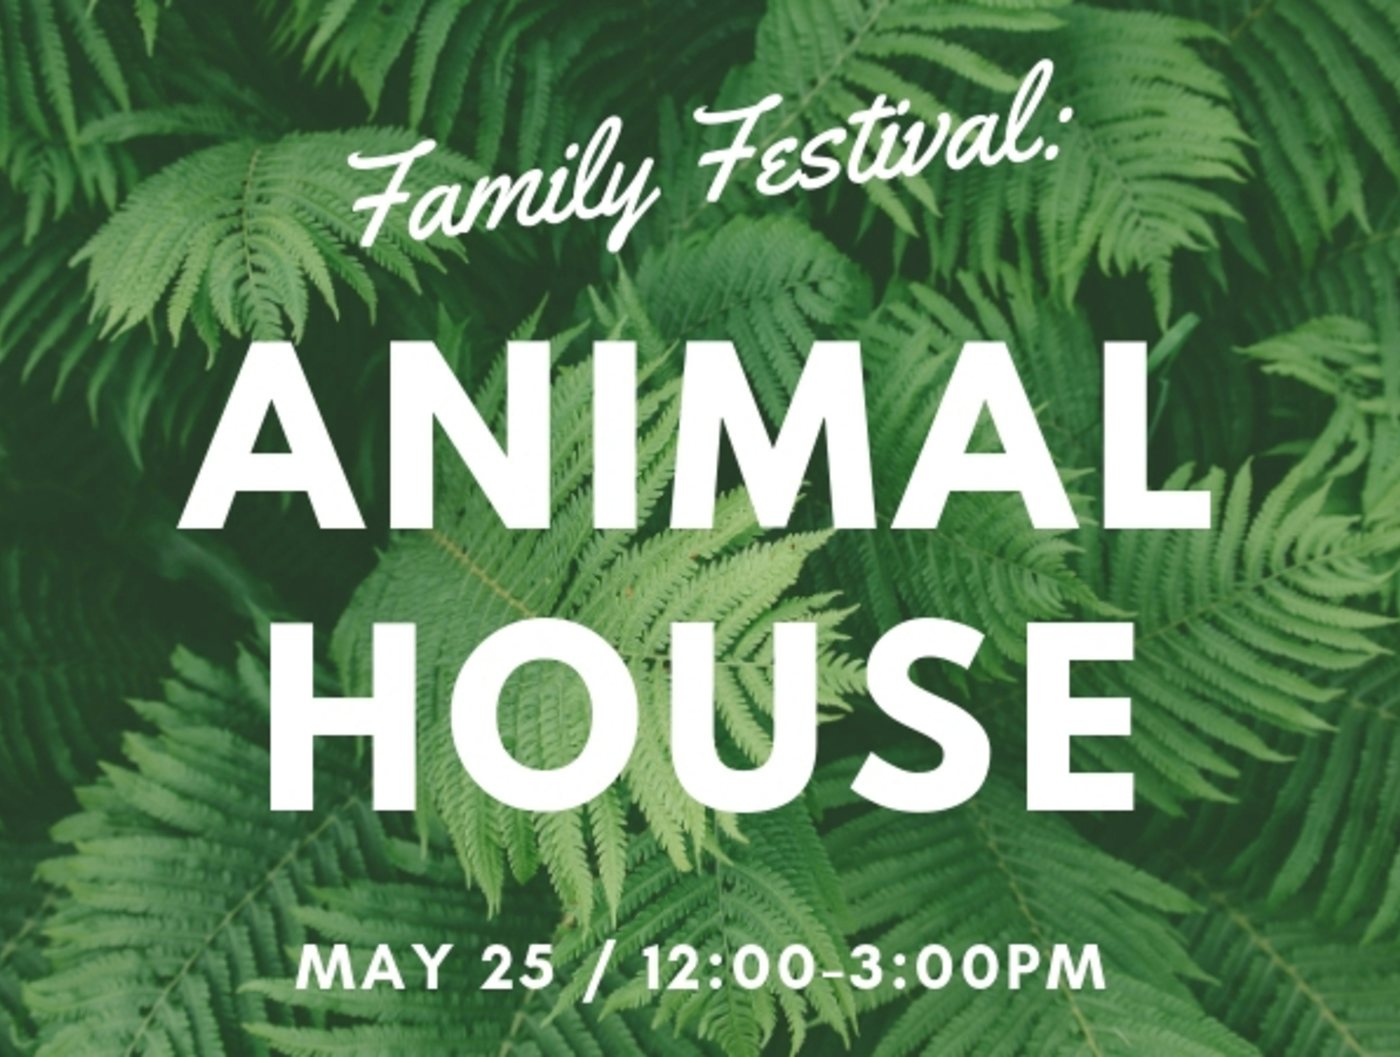 Family Festival: Animal House